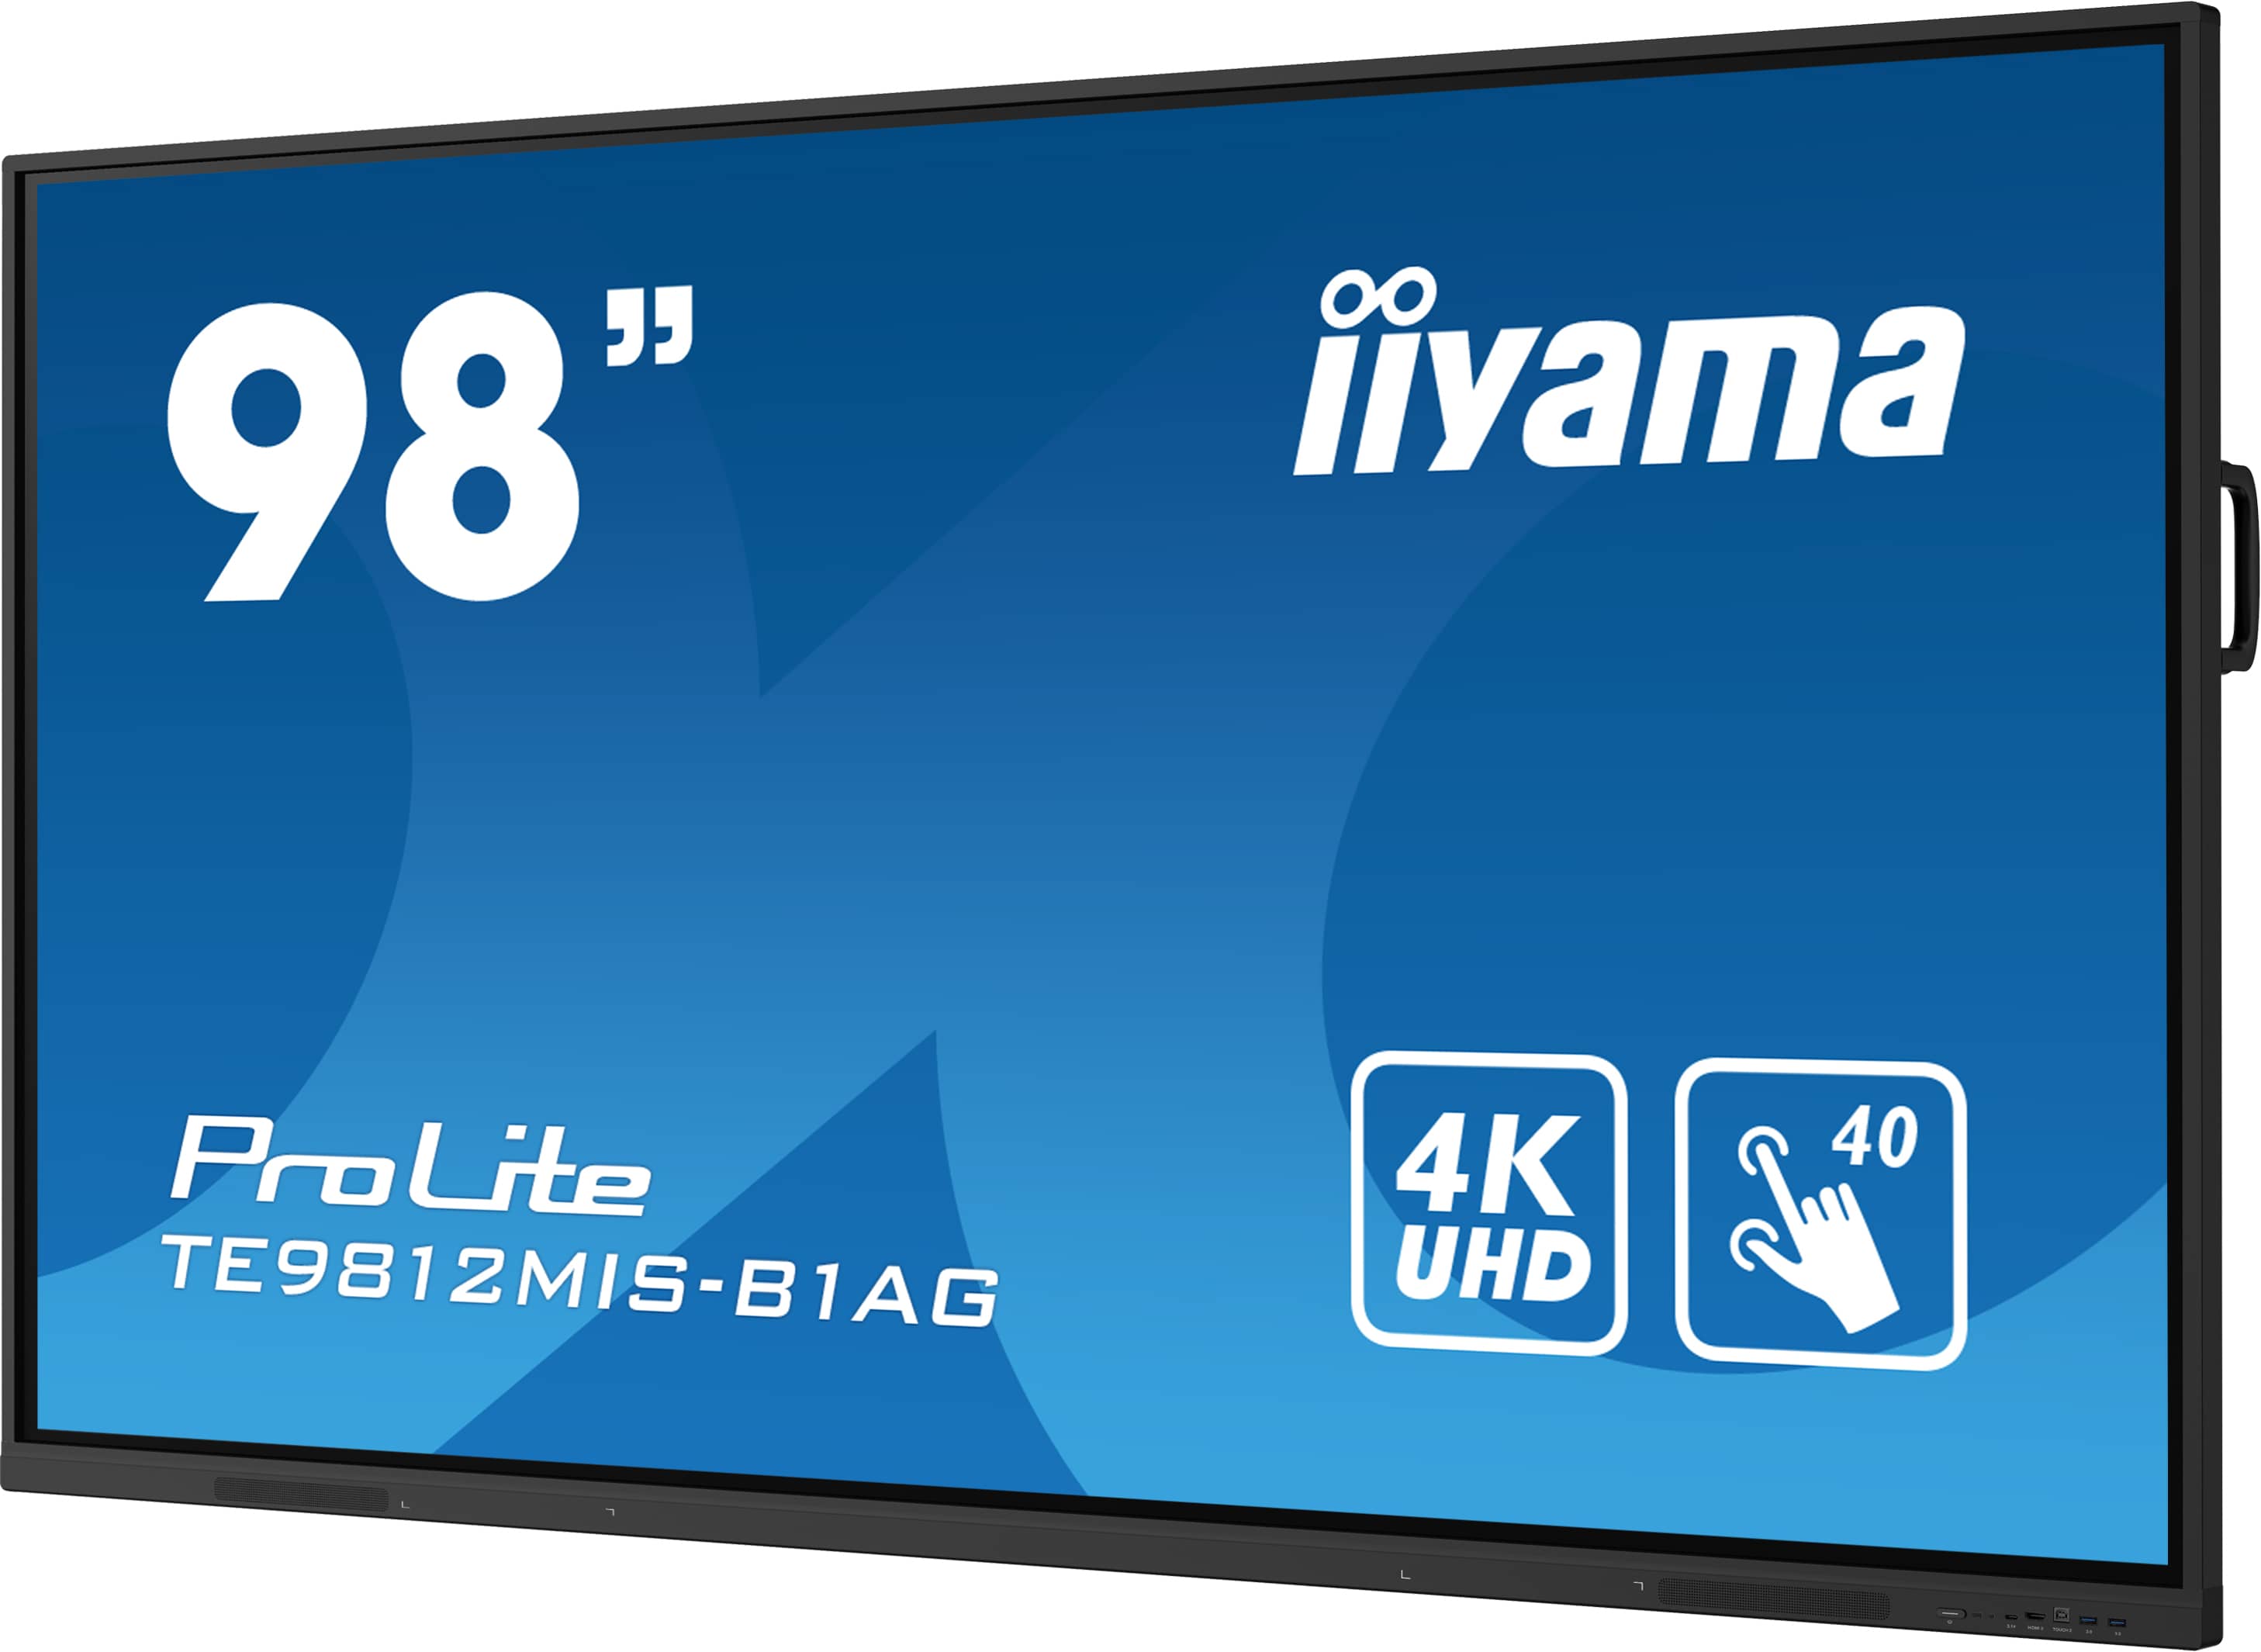 Iiyama ProLite TE9812MIS-B1AG | Interaktives 97.5" Touchscreen-Display mit 4K-Auflösung, integrierter Whiteboard-Software und Benutzerprofilen